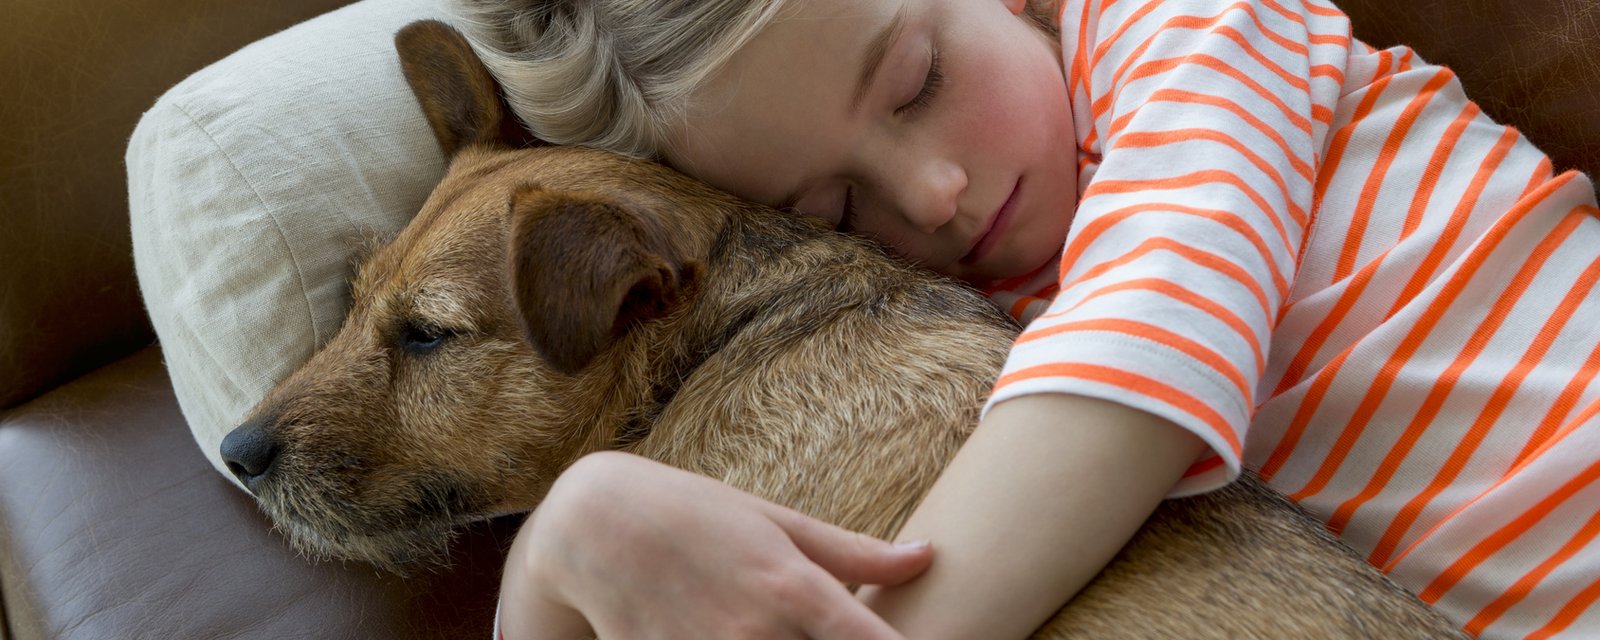 7 bénéfices à dormir avec votre chien!